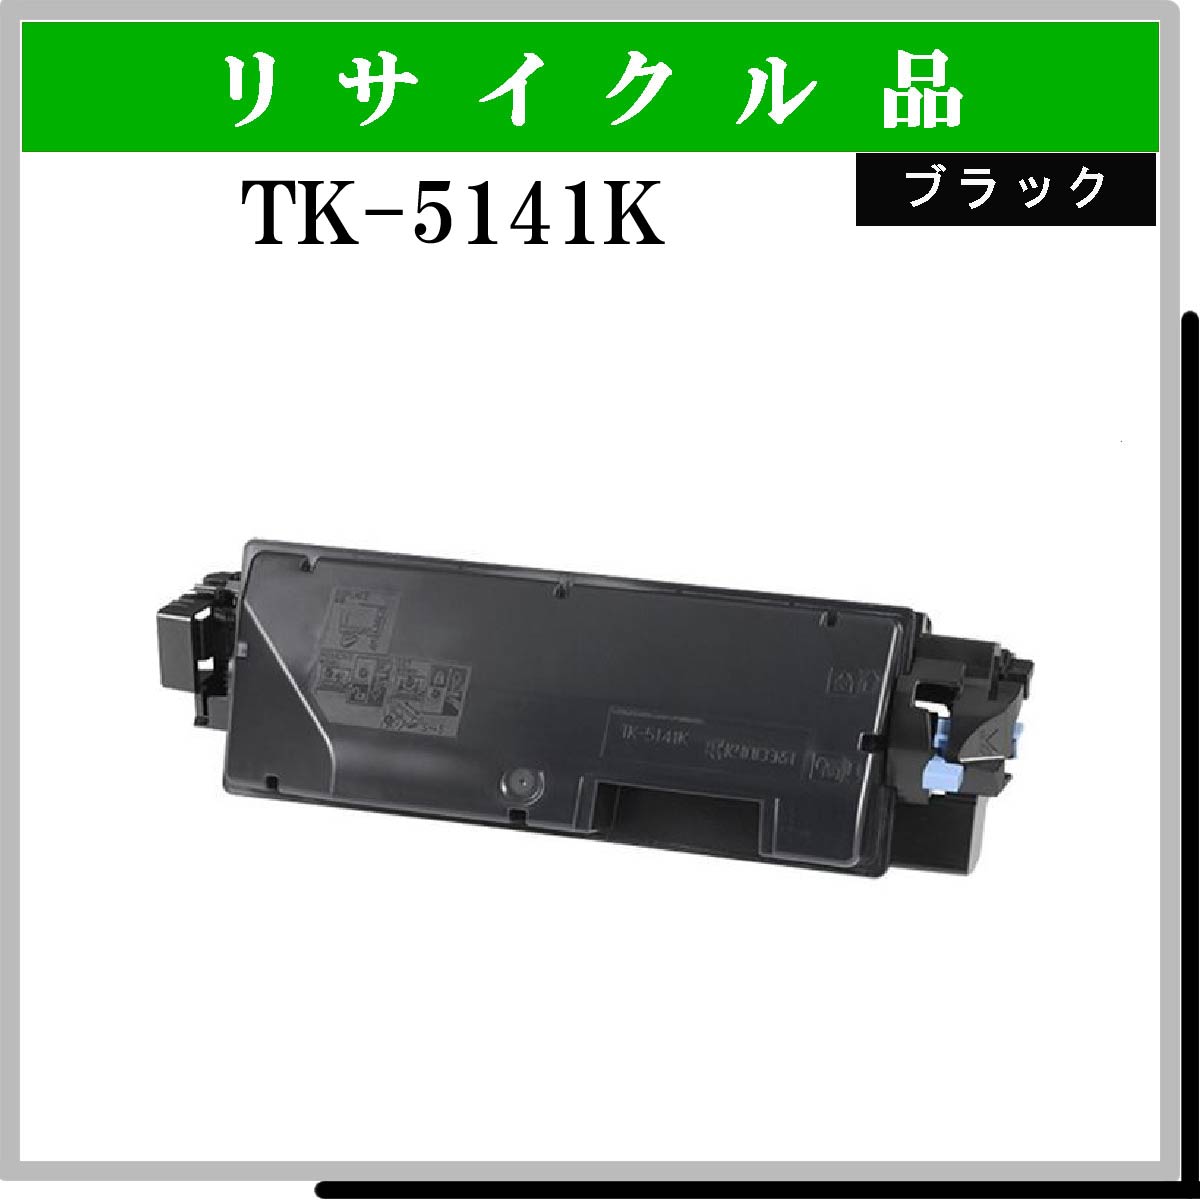 TK-5141K